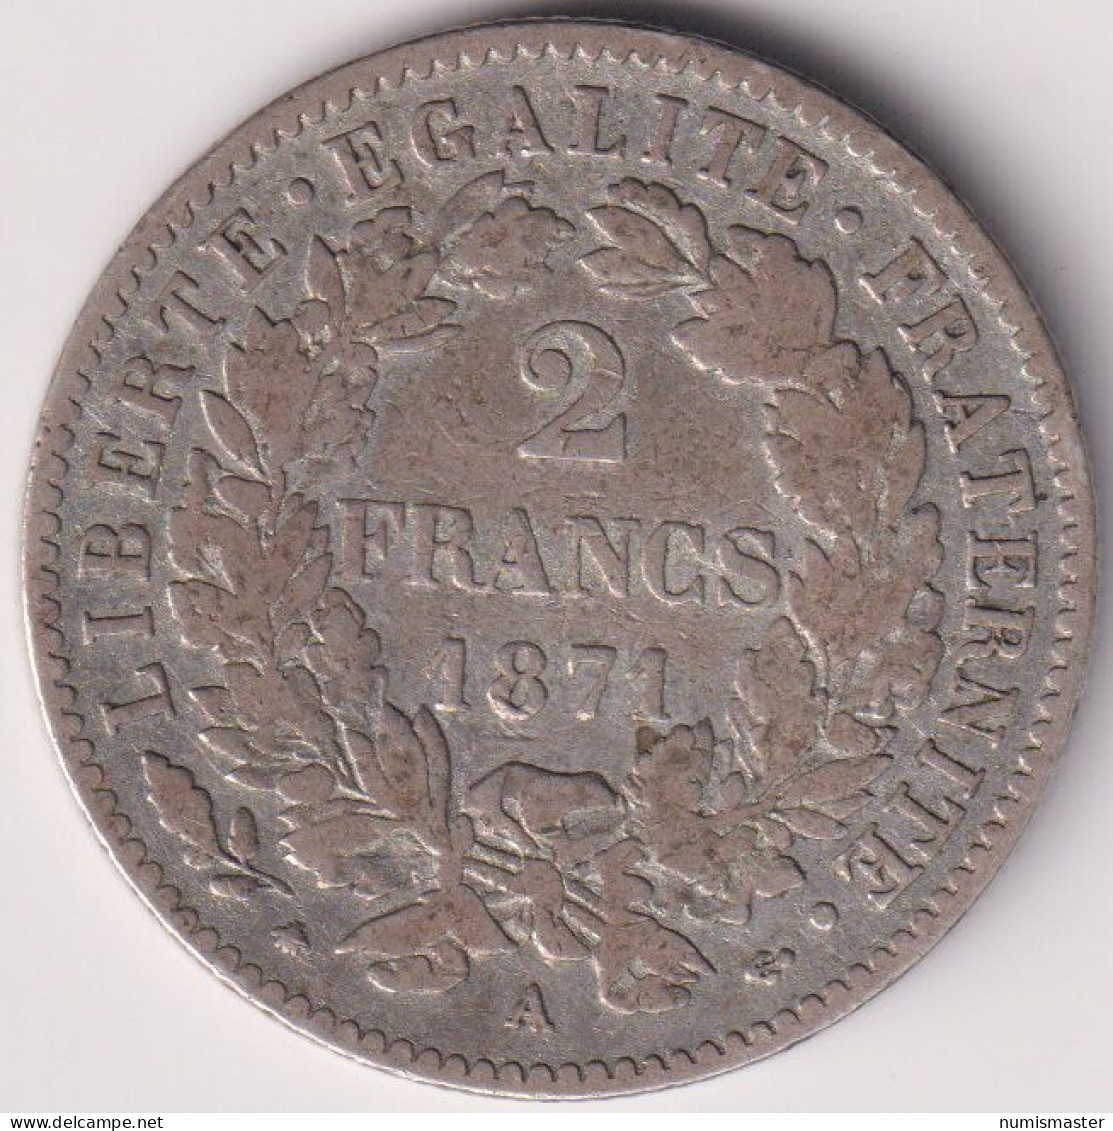 FRANCE , 2 FRANCS 1871 A - 1871 Comune Di Parigi